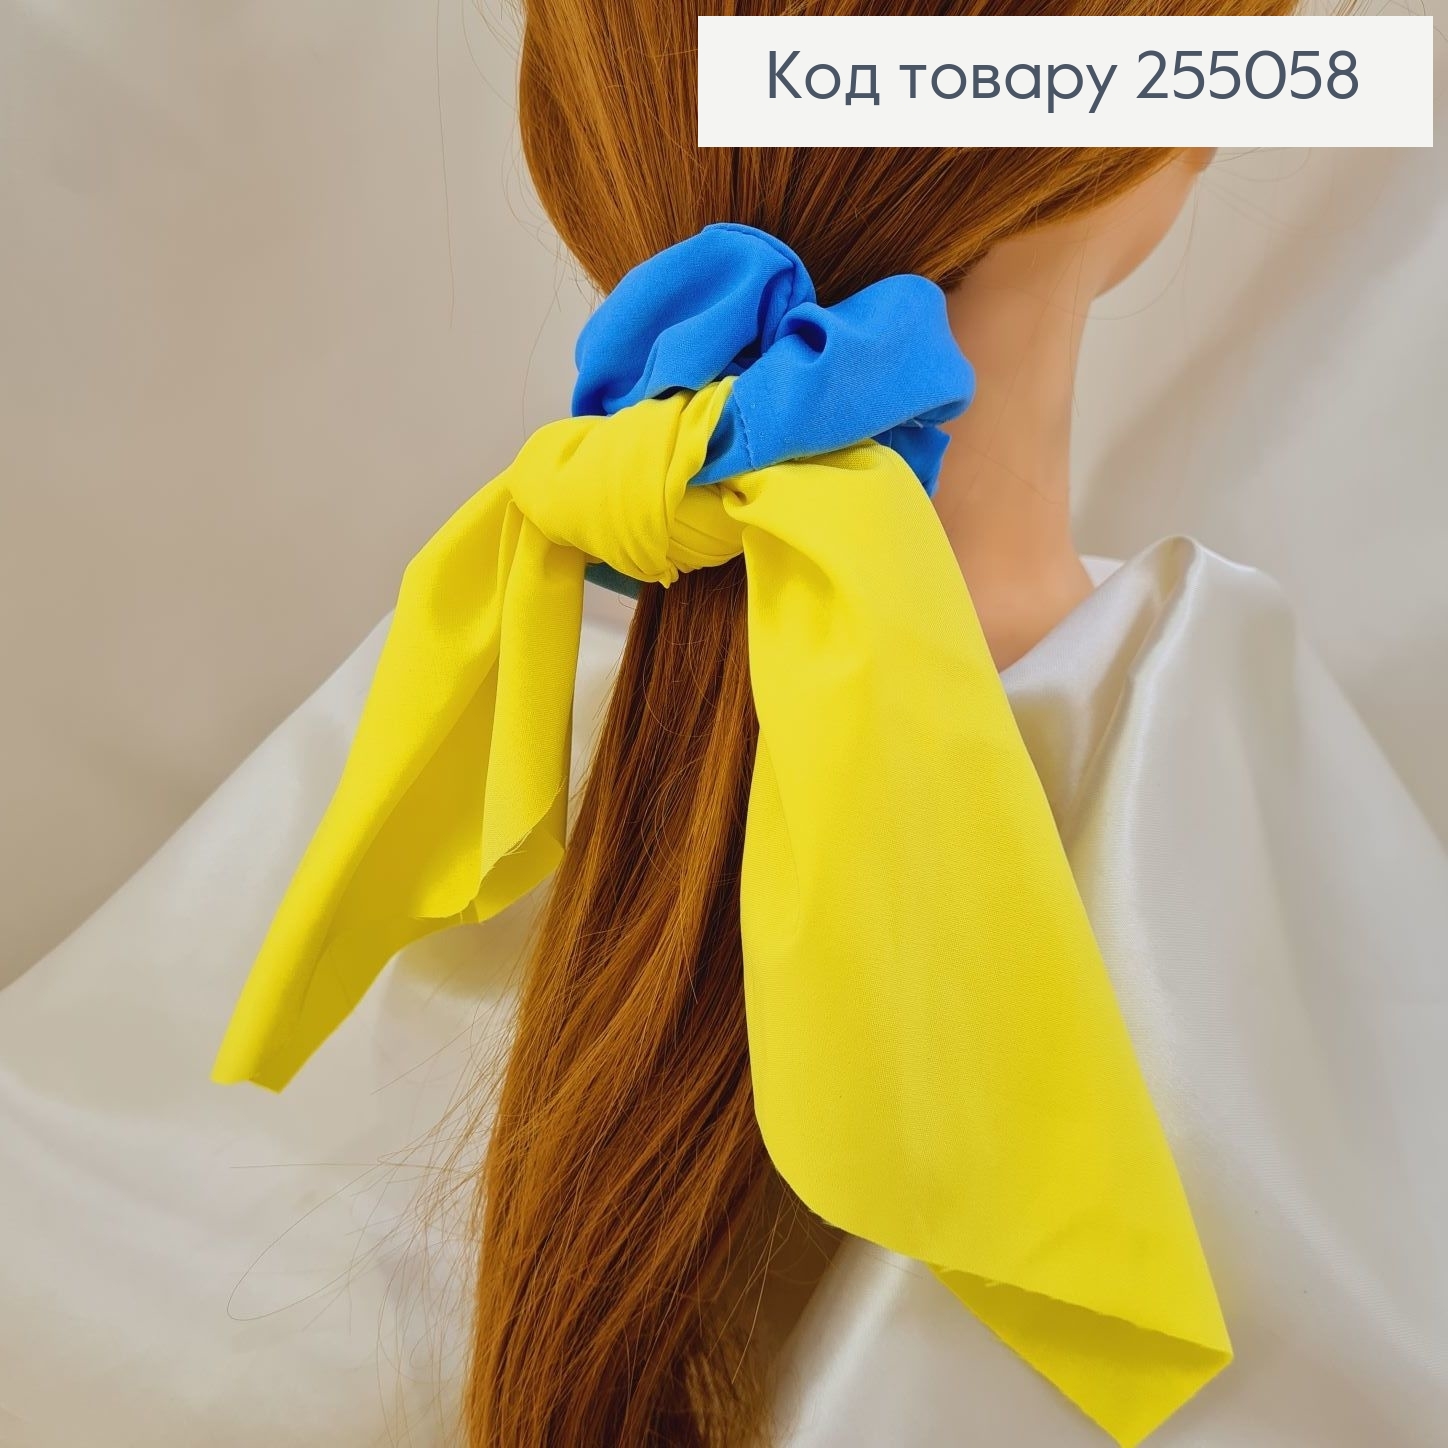 Резинка Твилли желто-голубая (ручная работа, Украина) 255058 фото 2